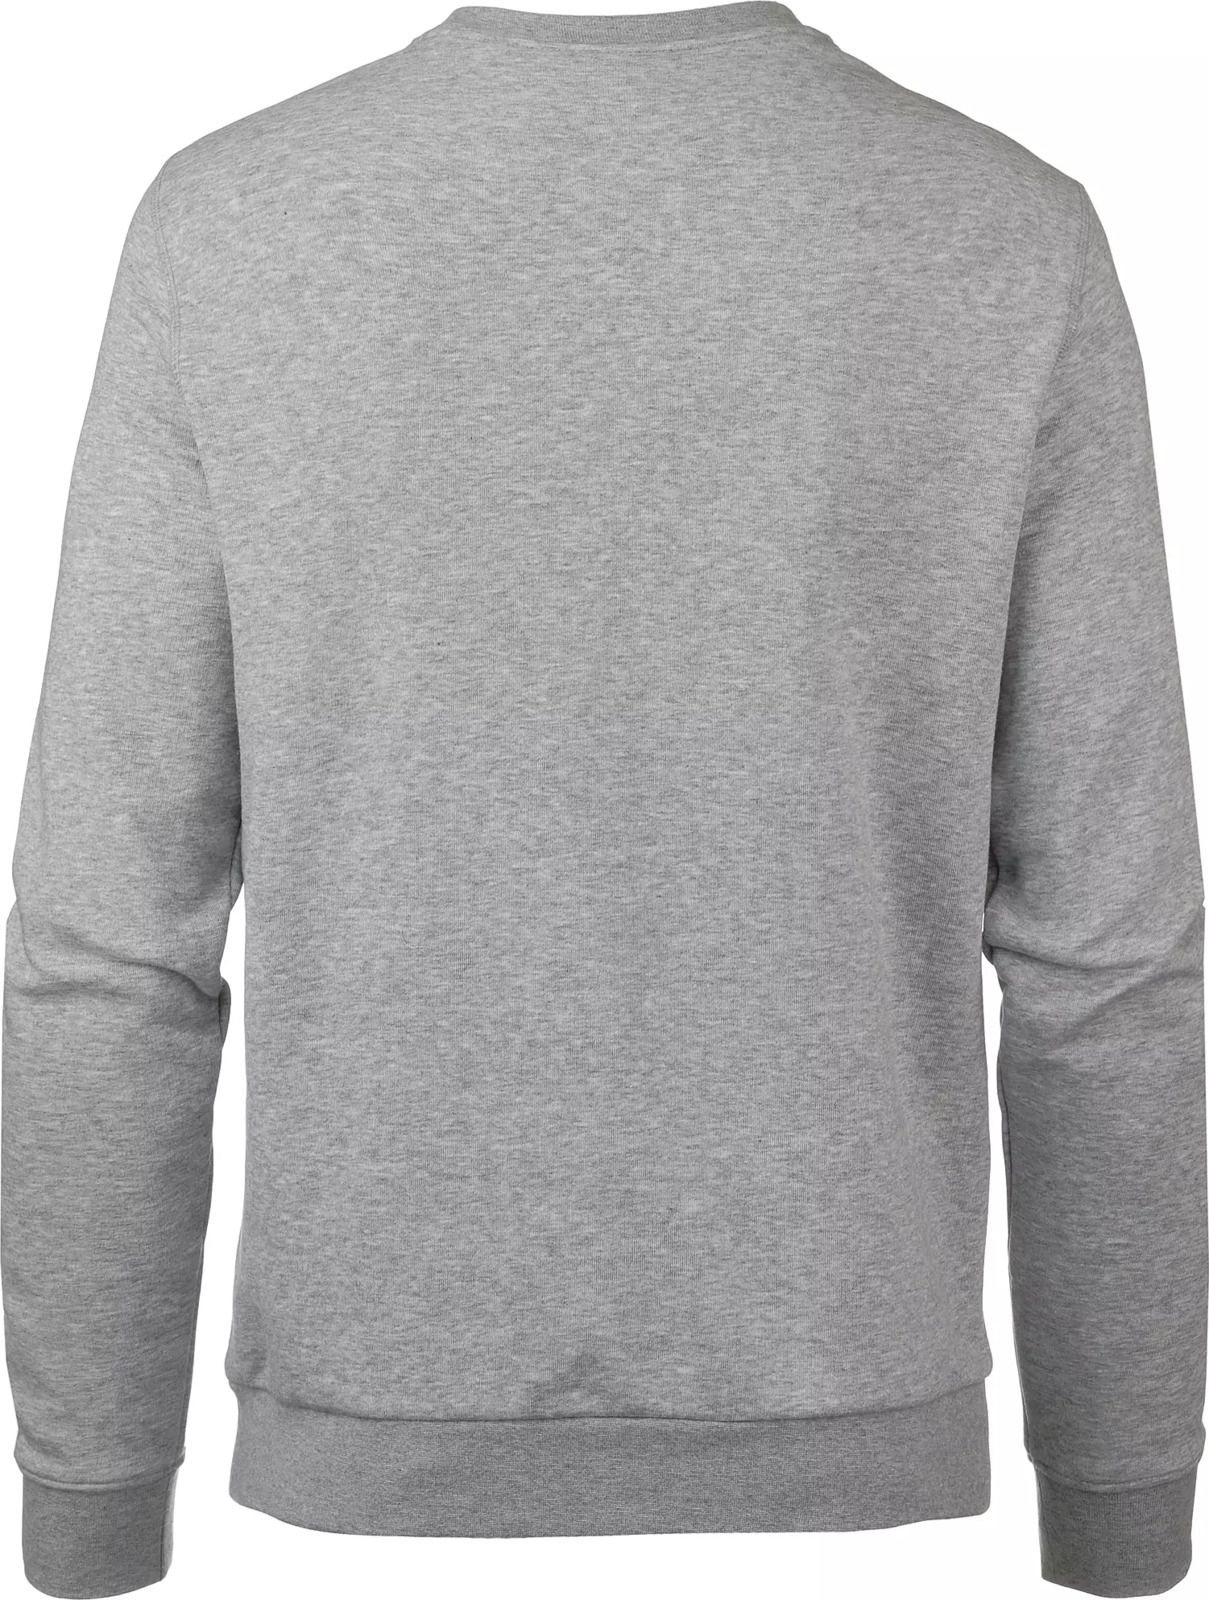   Jack Wolfskin Logo Sweatshirt M, : -. 5018891-6111.  XL (52)